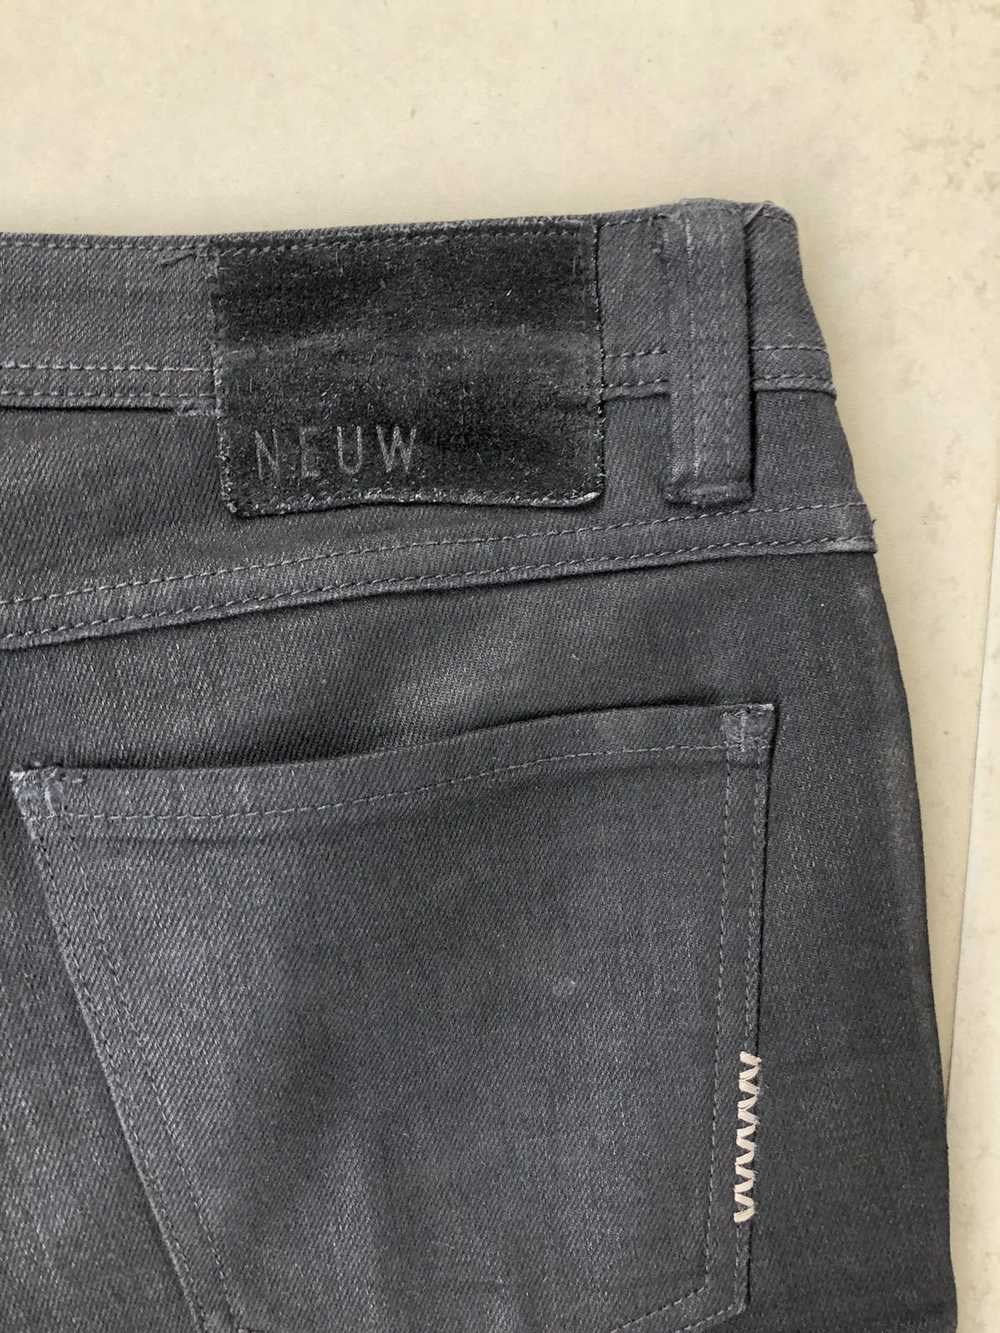 Neuw denim Iggy skinny black jeans - image 3